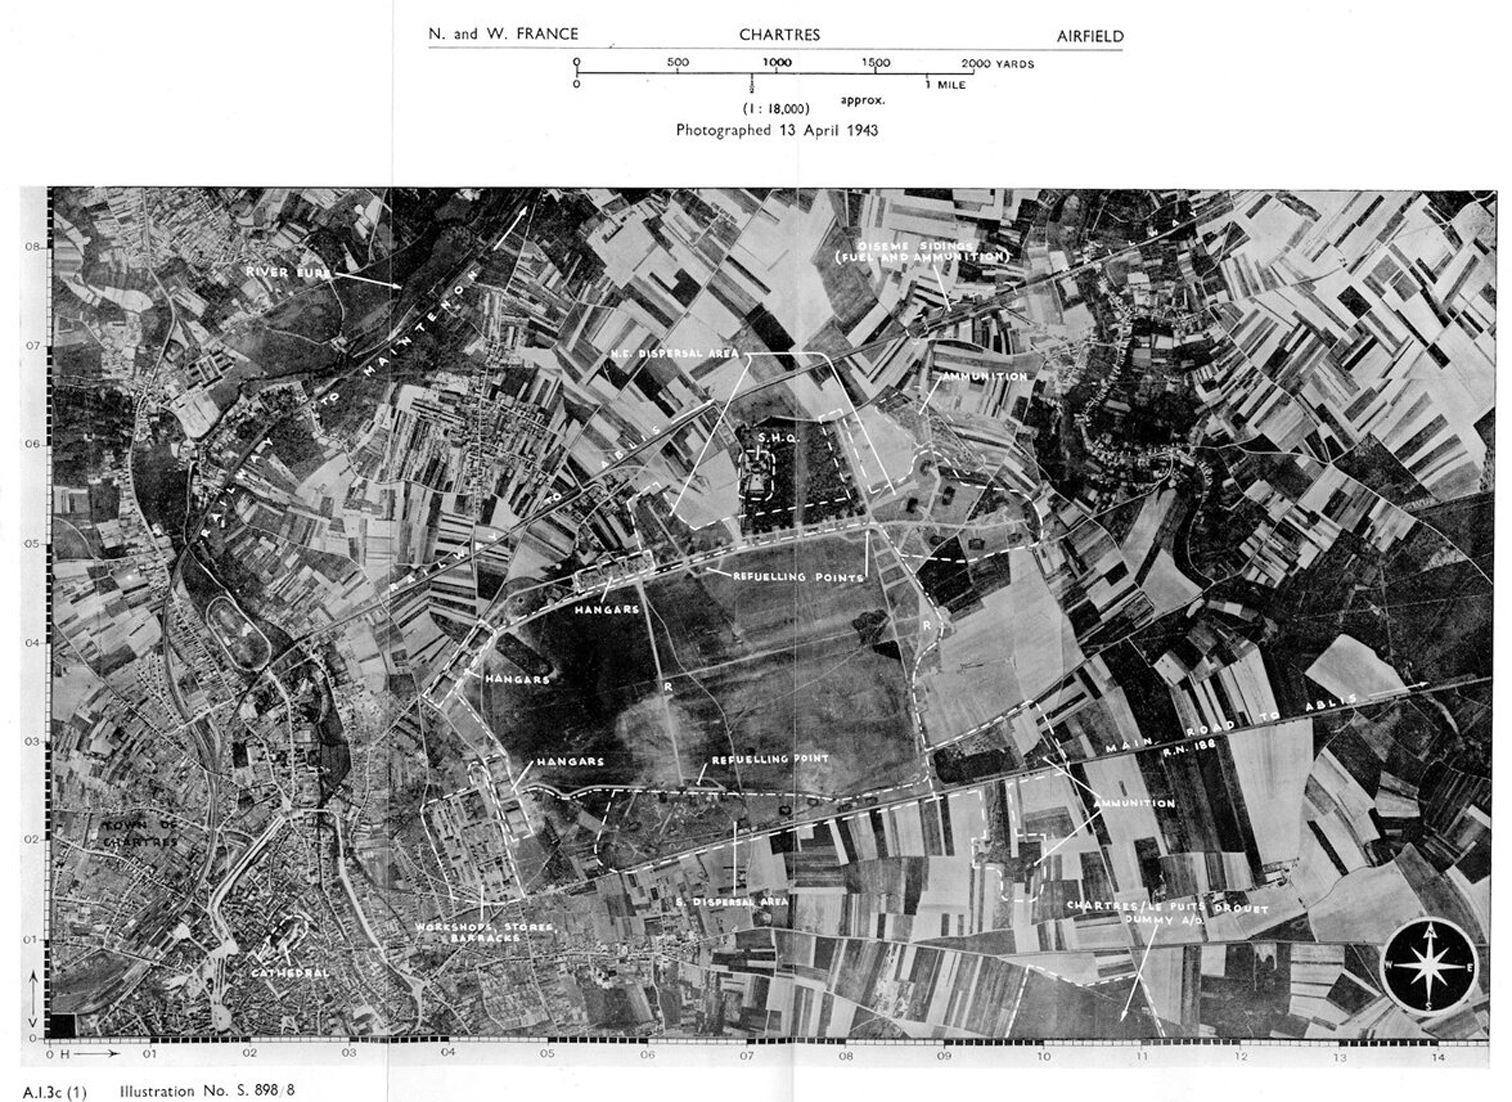 Photographie arienne du terrain de Chartres prise par la RAF en 1943